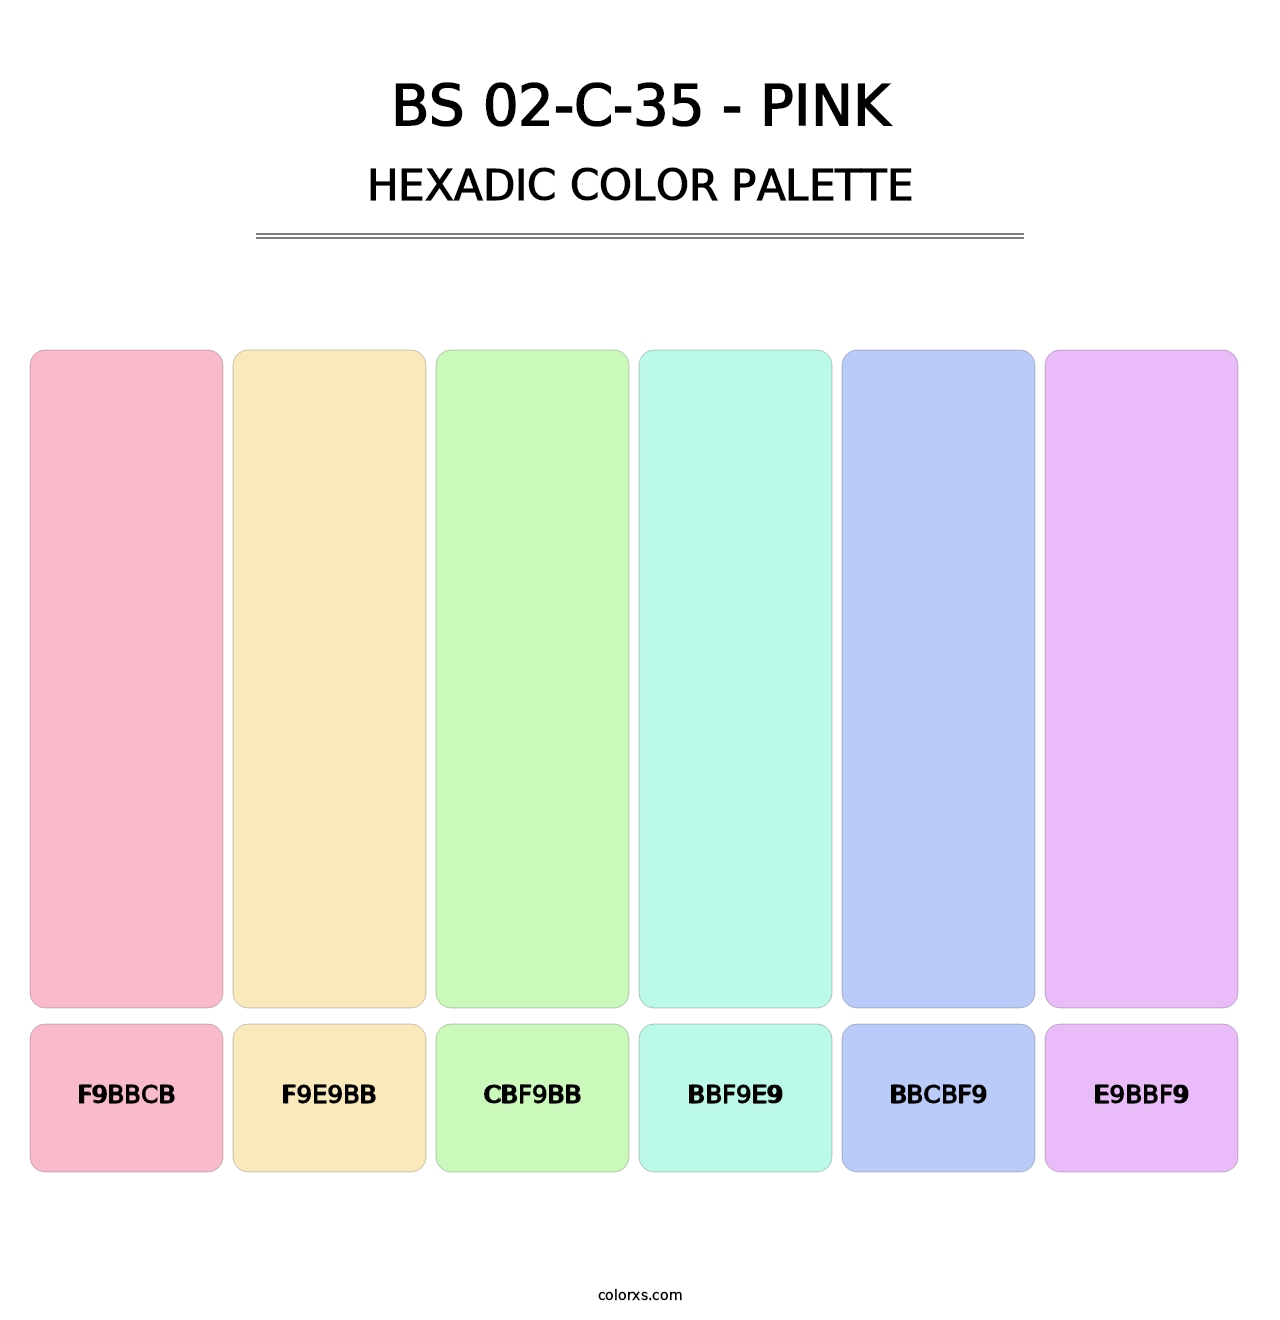 BS 02-C-35 - Pink - Hexadic Color Palette